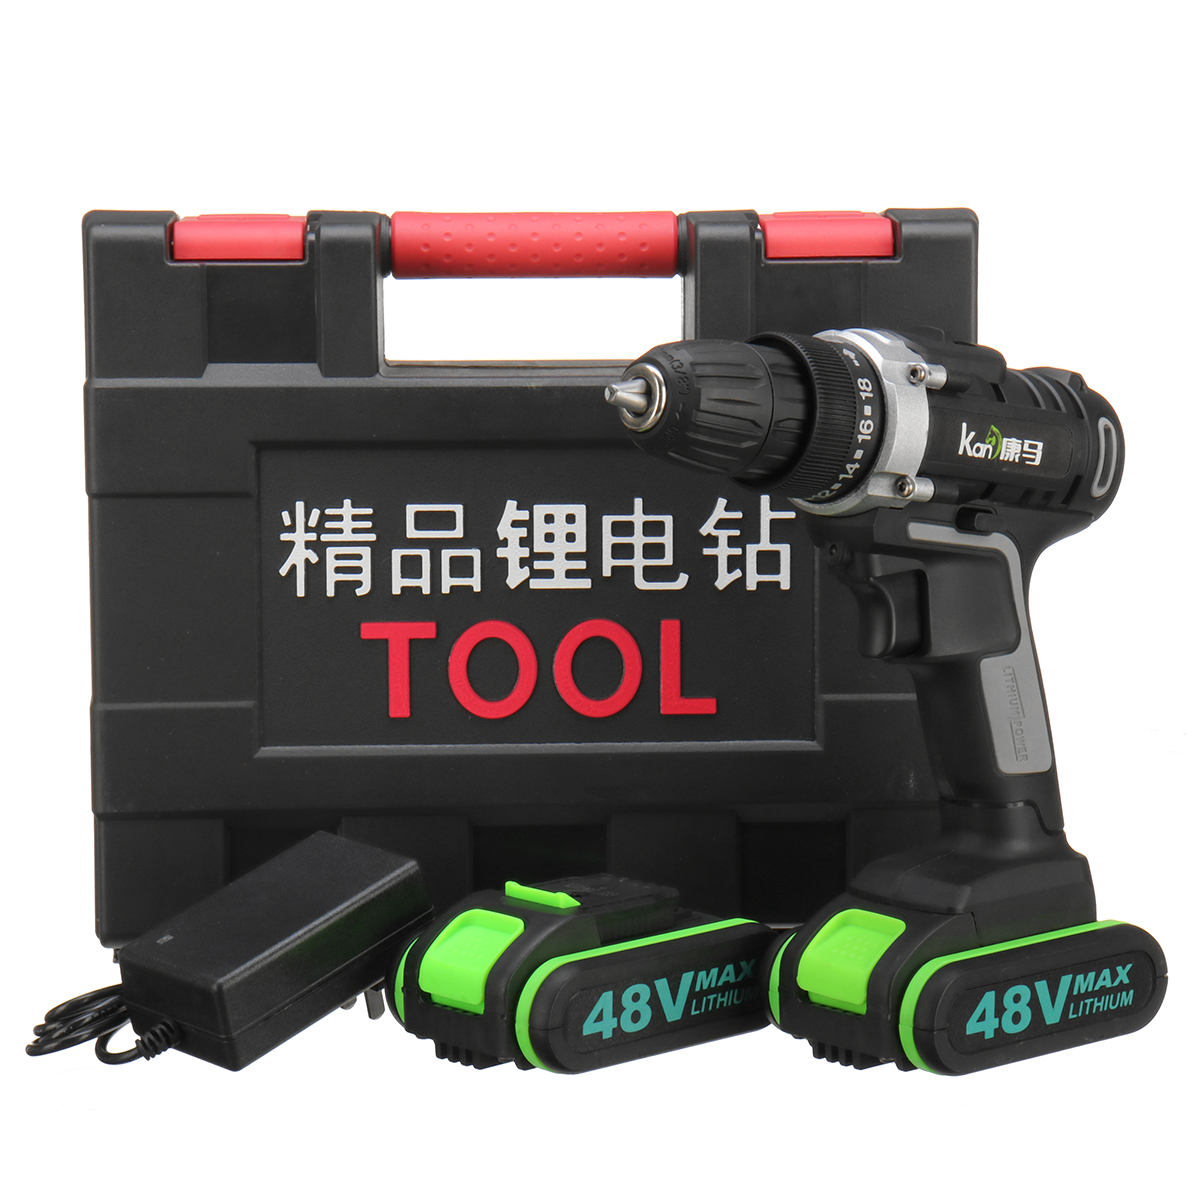 

48V 18 Gear Power Drills Аккумуляторные электрические дрели 2 скорости LED освещения Мощные сверления Инструмент